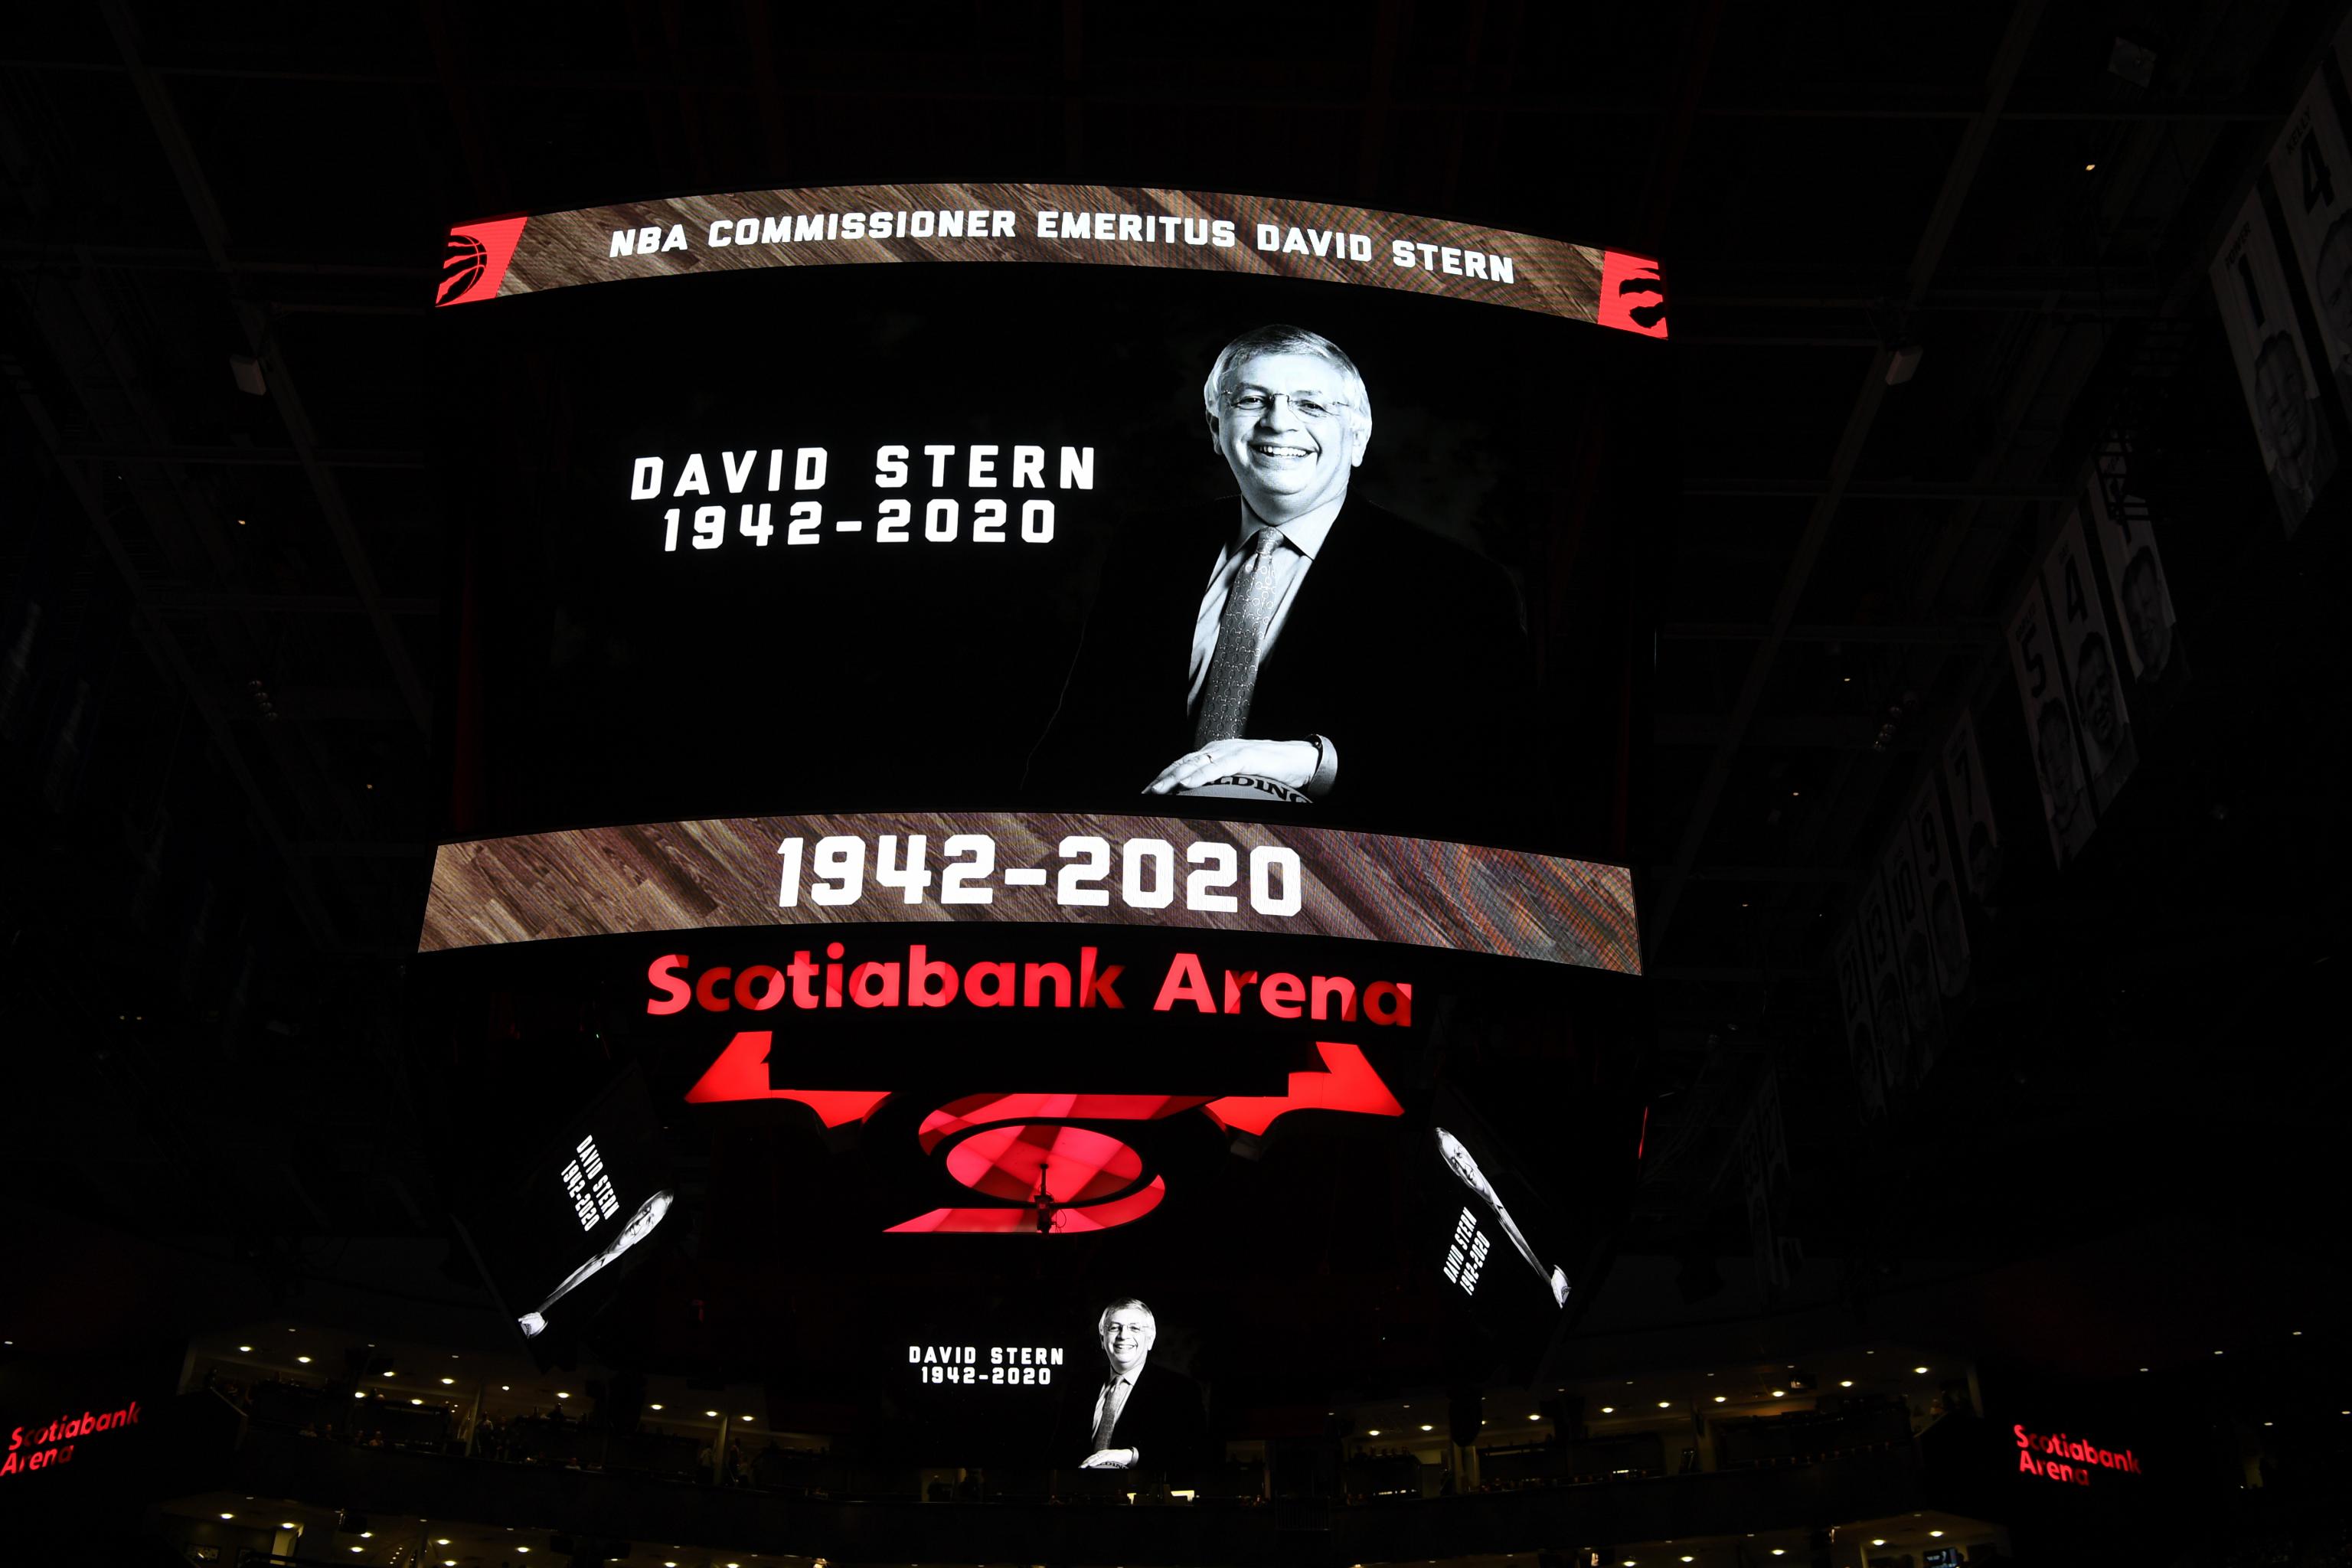 NBA Commissioner Emeritus David Stern dies at 77